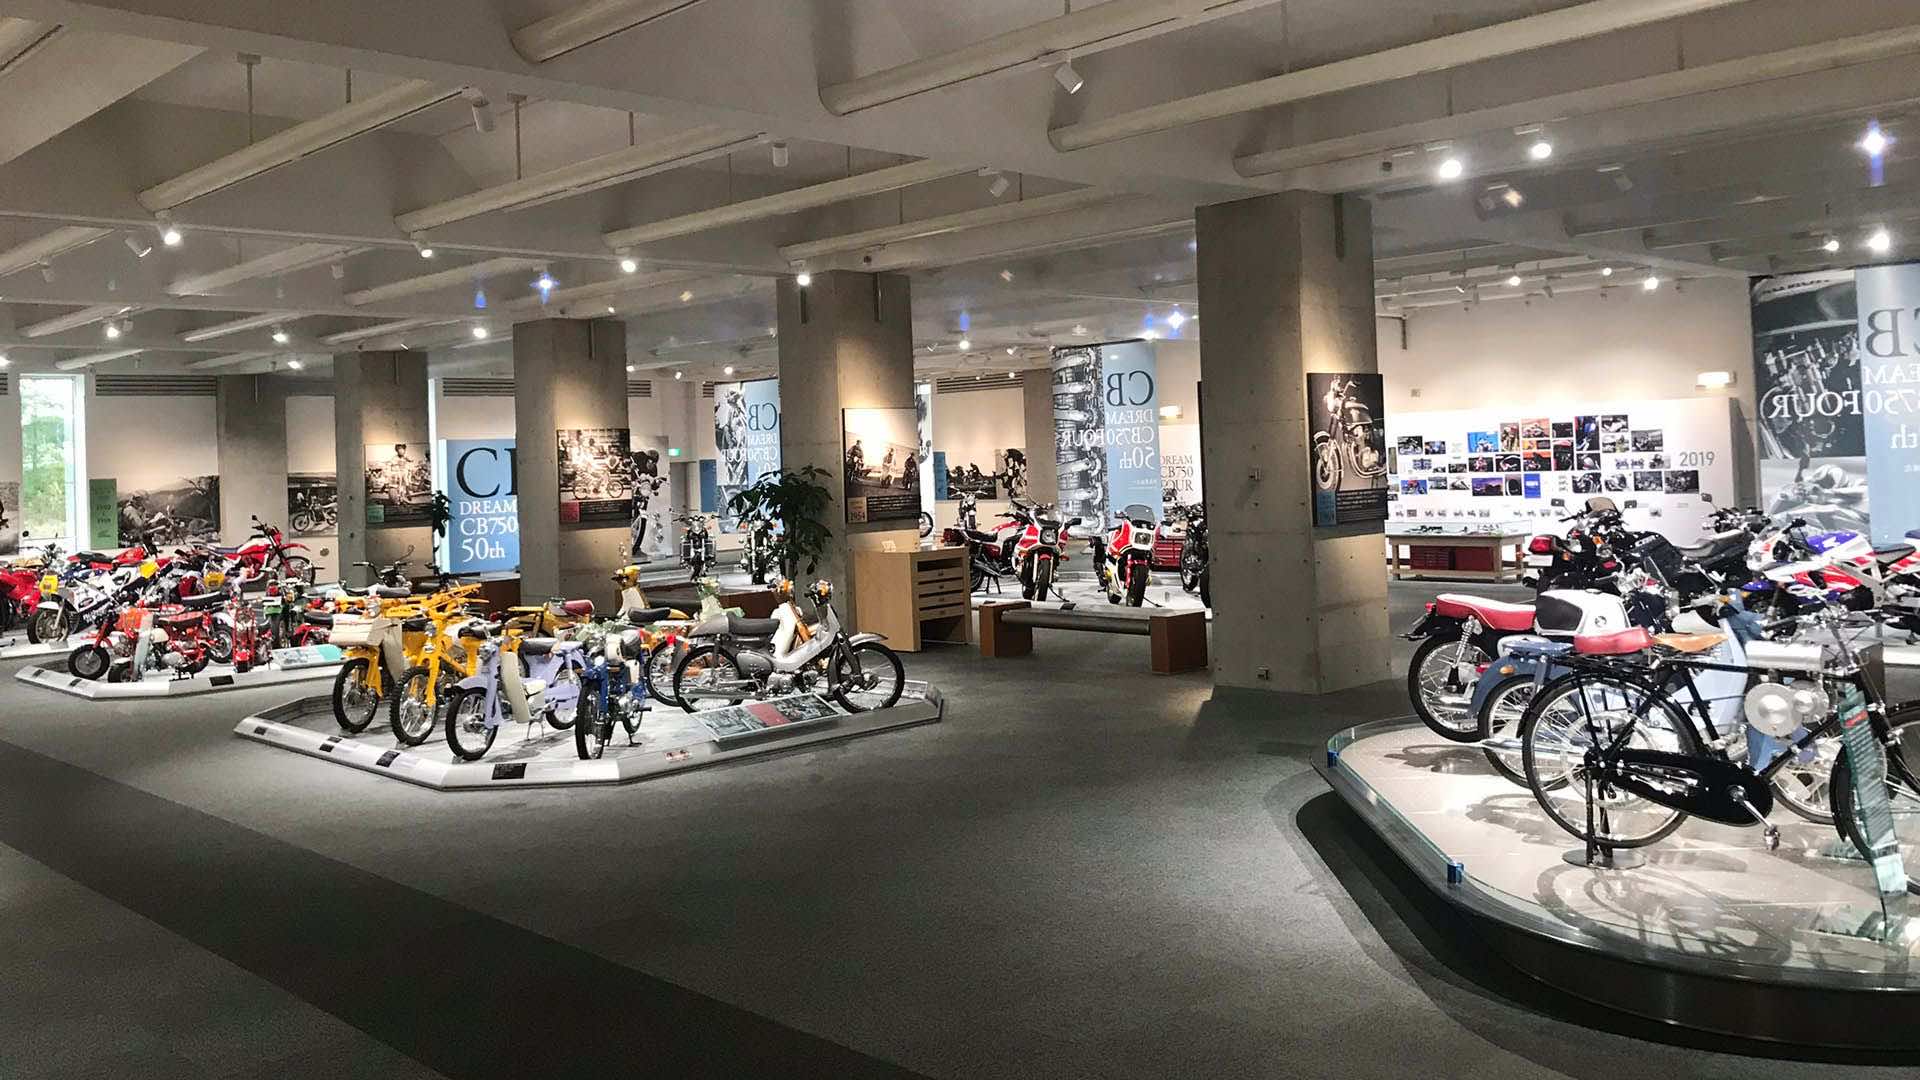 Το εσωτερικό του μουσείου της Honda που δείχνει κομμάτι της συλλογής από παπάκια και μηχανές